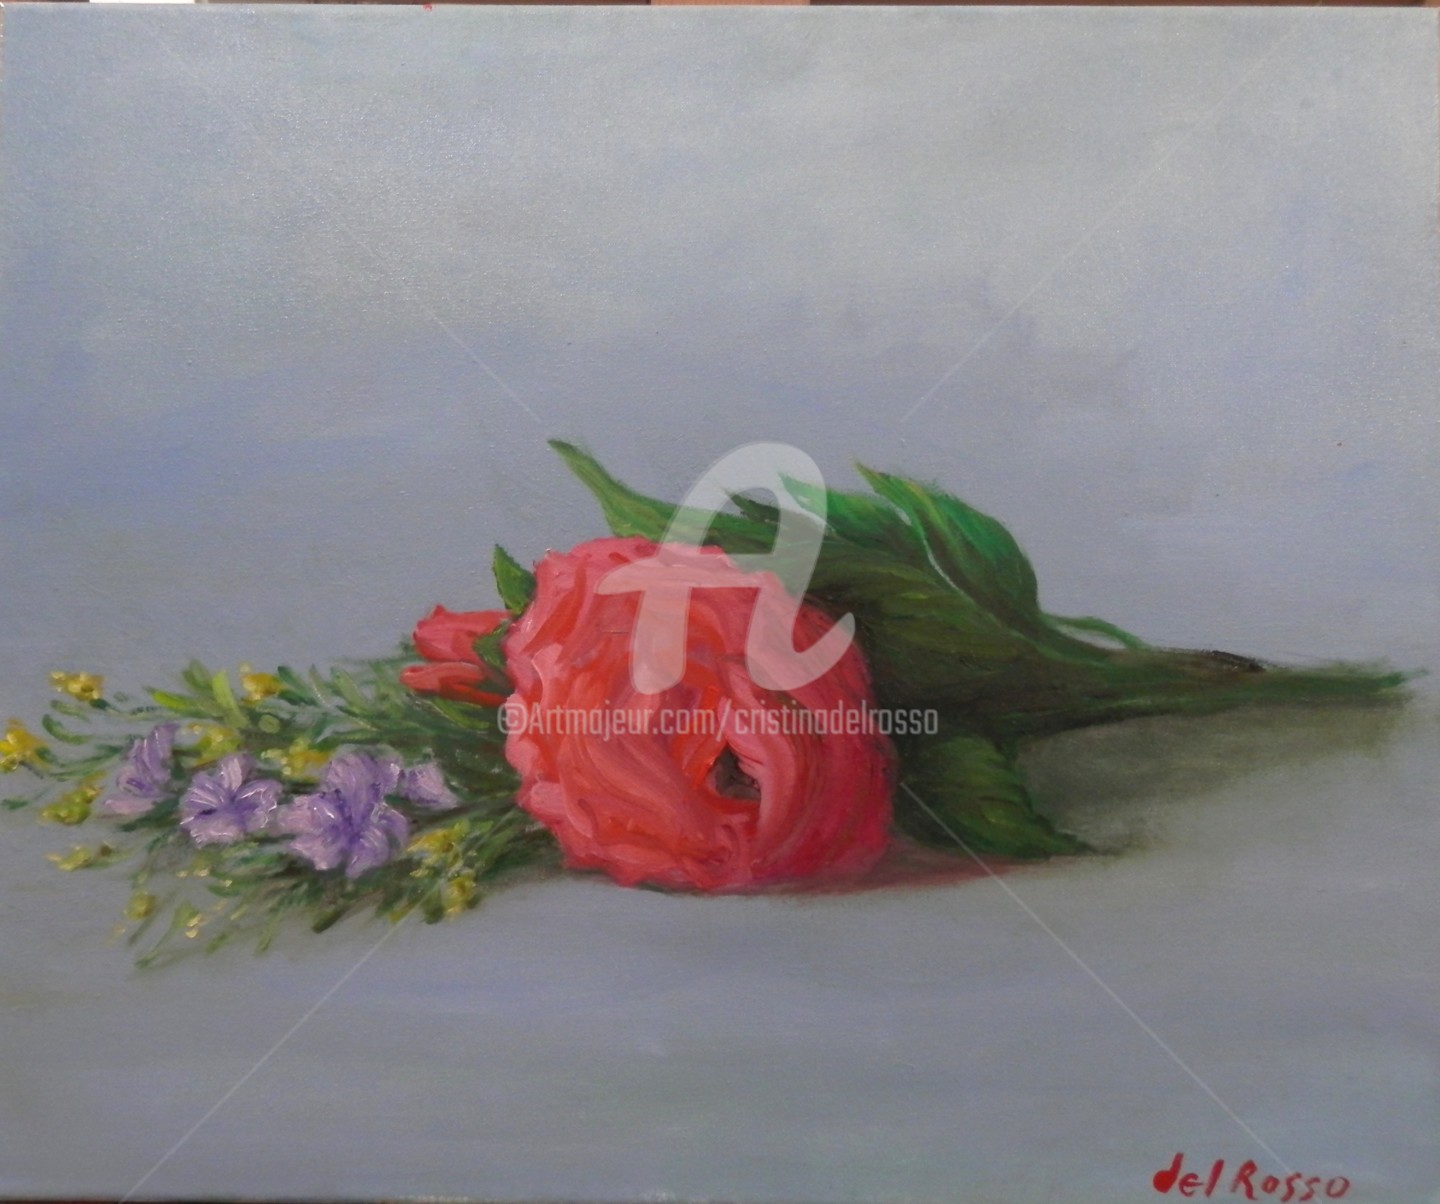 Cristina Del Rosso - Estudio de flores recién recogidas (Sketch of flowers)